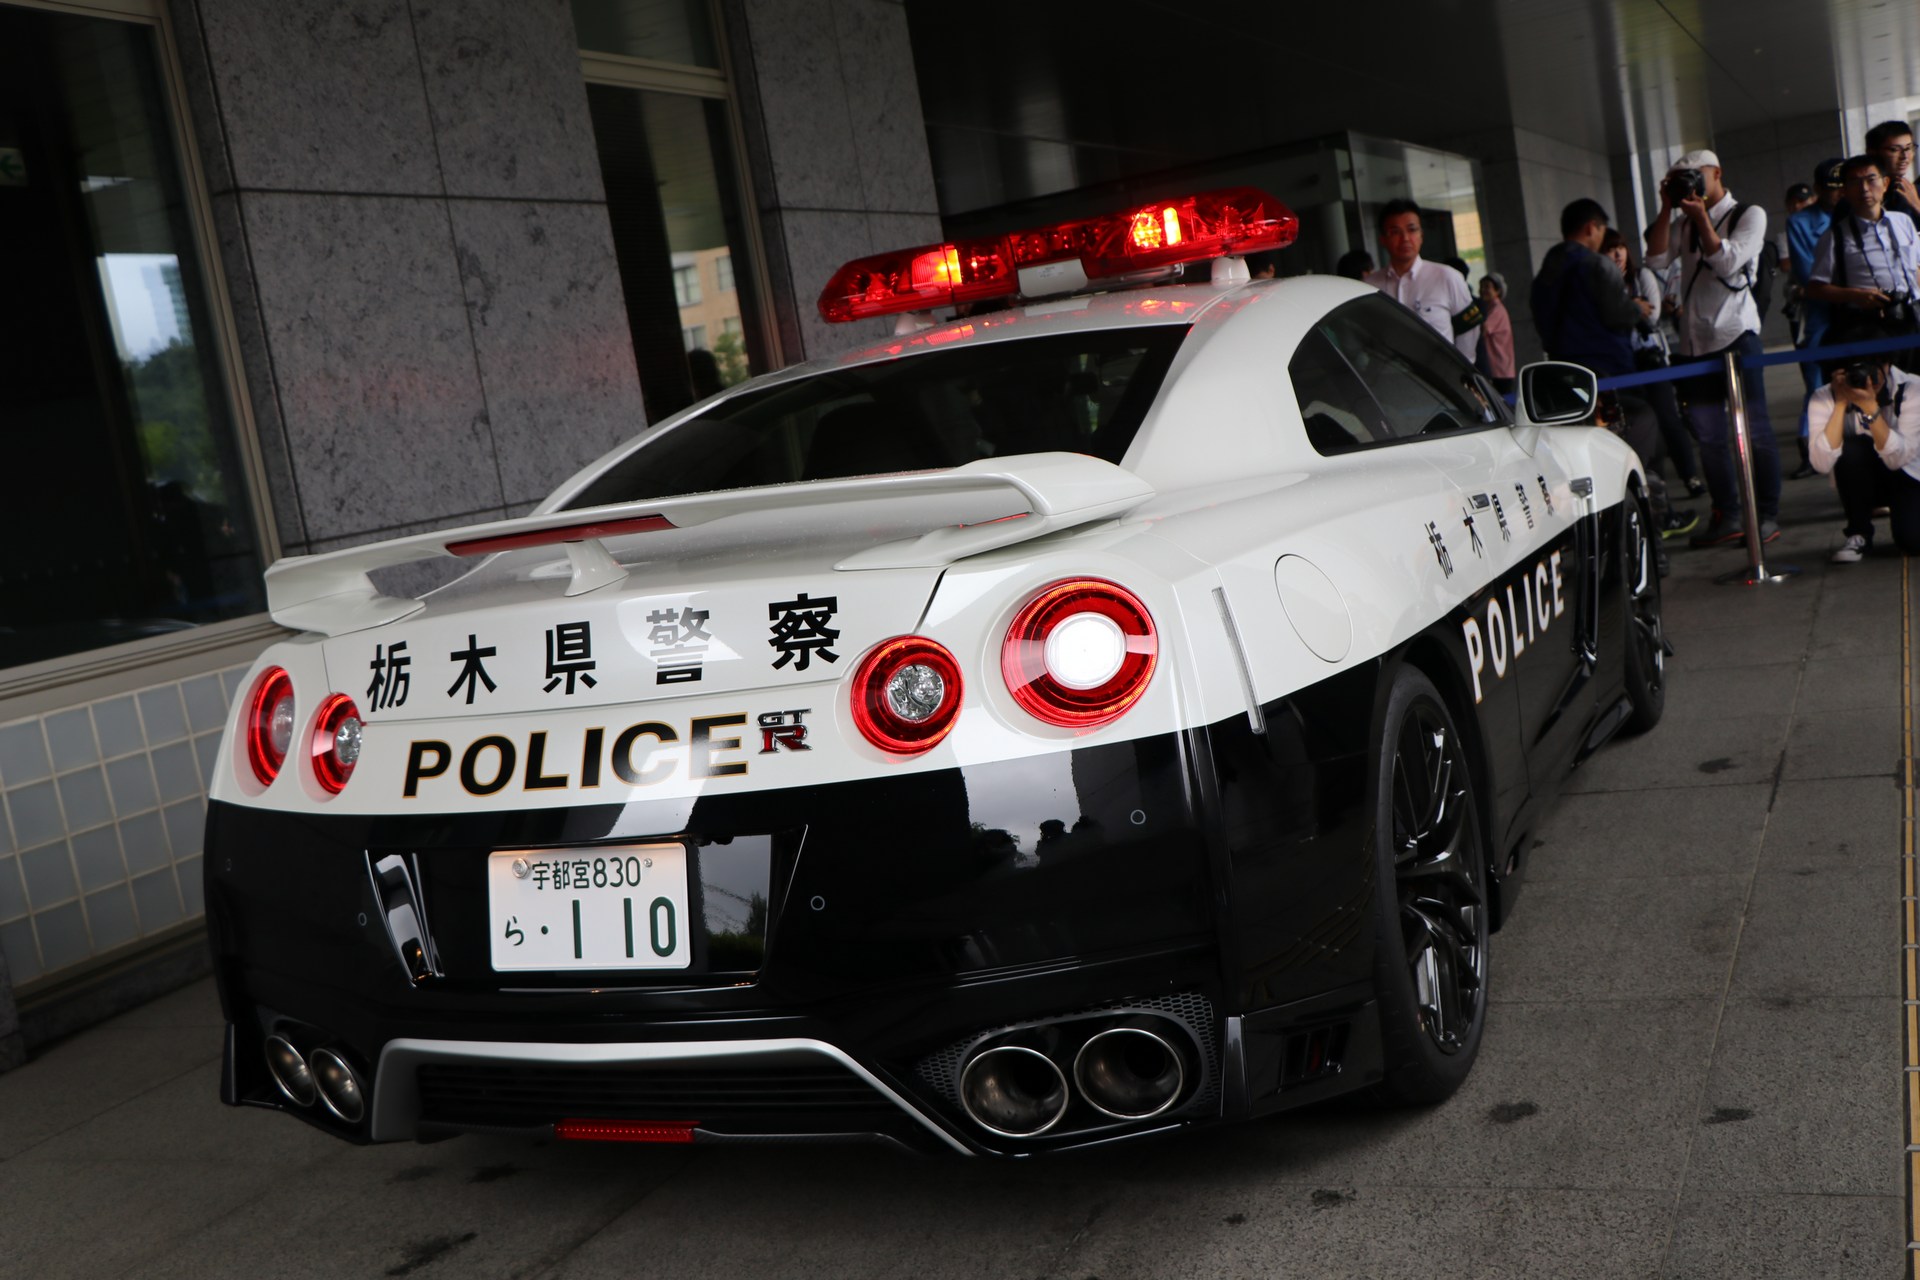 "بالصور" نيسان GT-R تدخل الخدمة رسميا بأسطول الشرطة اليابانية 40